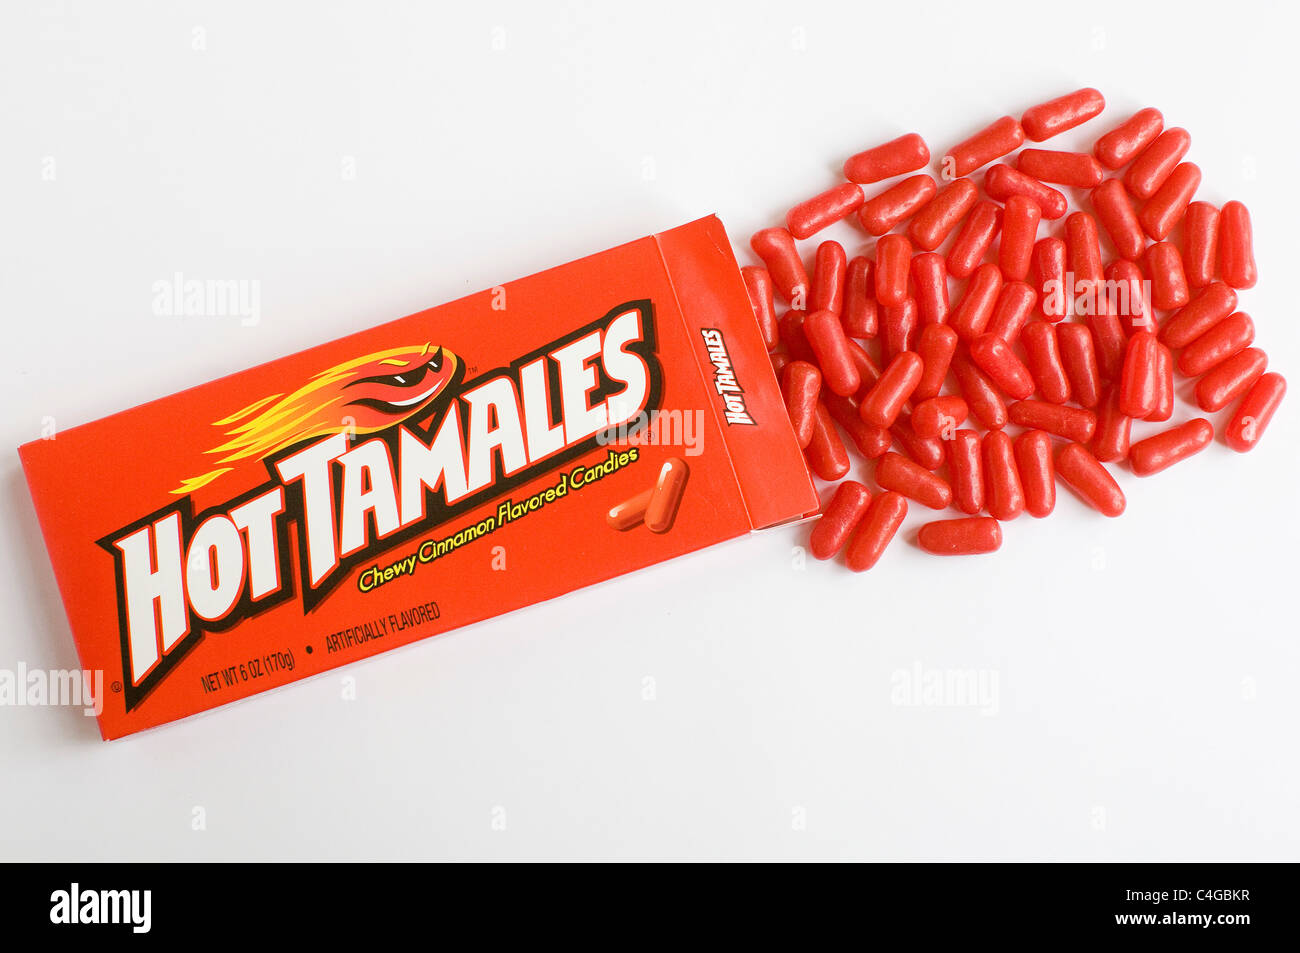 Hot tamales dulces. Foto de stock